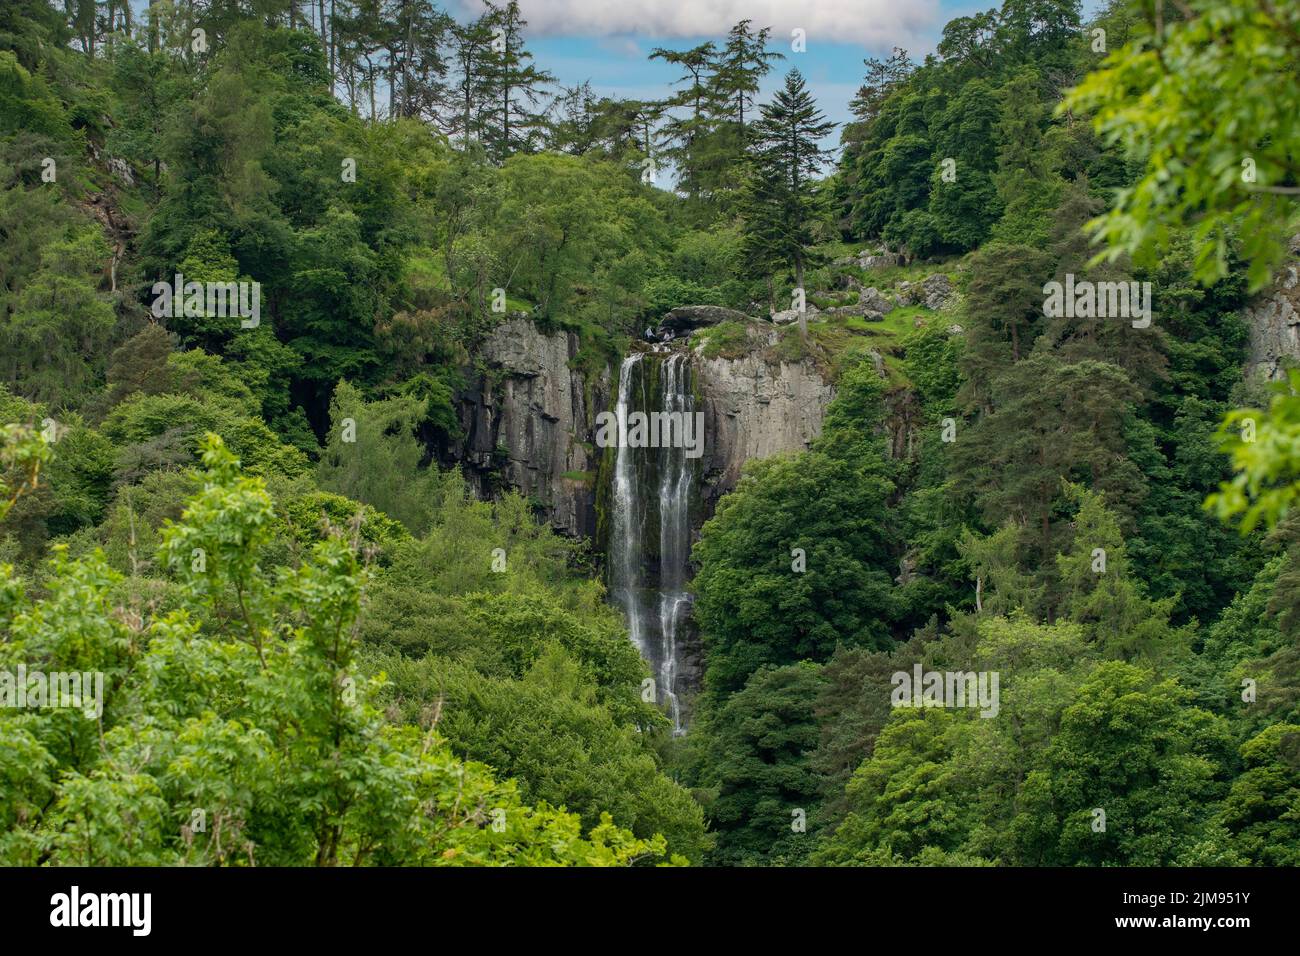 Cascade de Rhaeadr, LLanrhaeadr-Ym-Mochnant, Powys, pays de Galles Banque D'Images